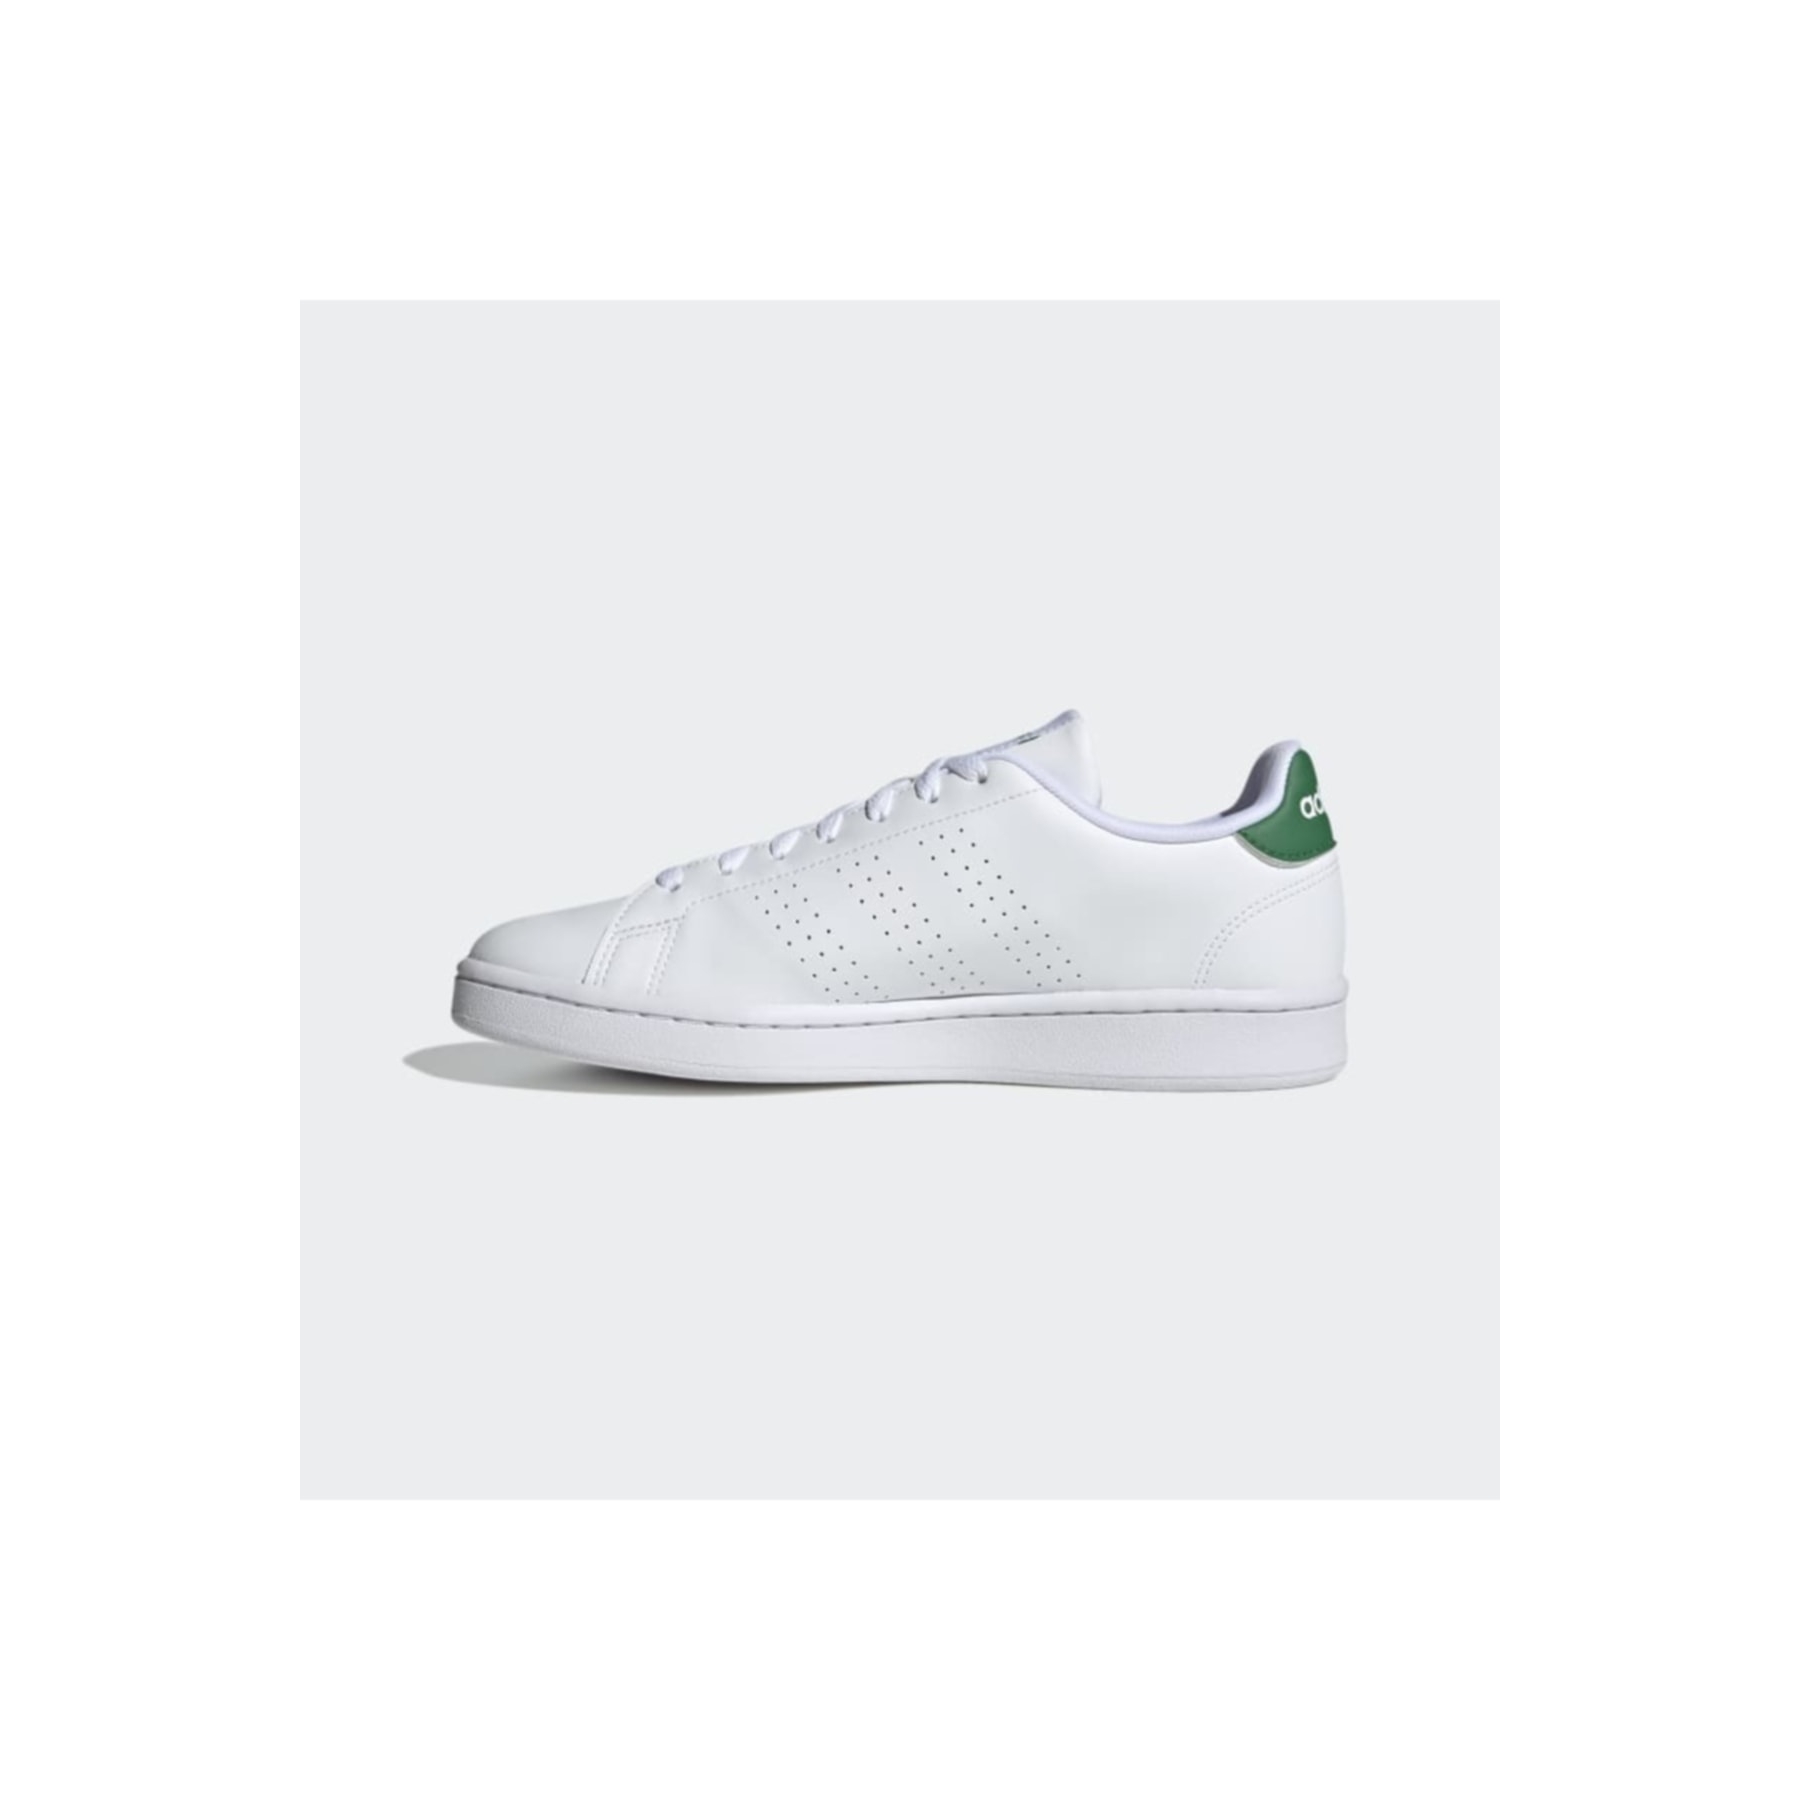 adidas Advantage Beyaz Spor Ayakkabı (GZ5300)